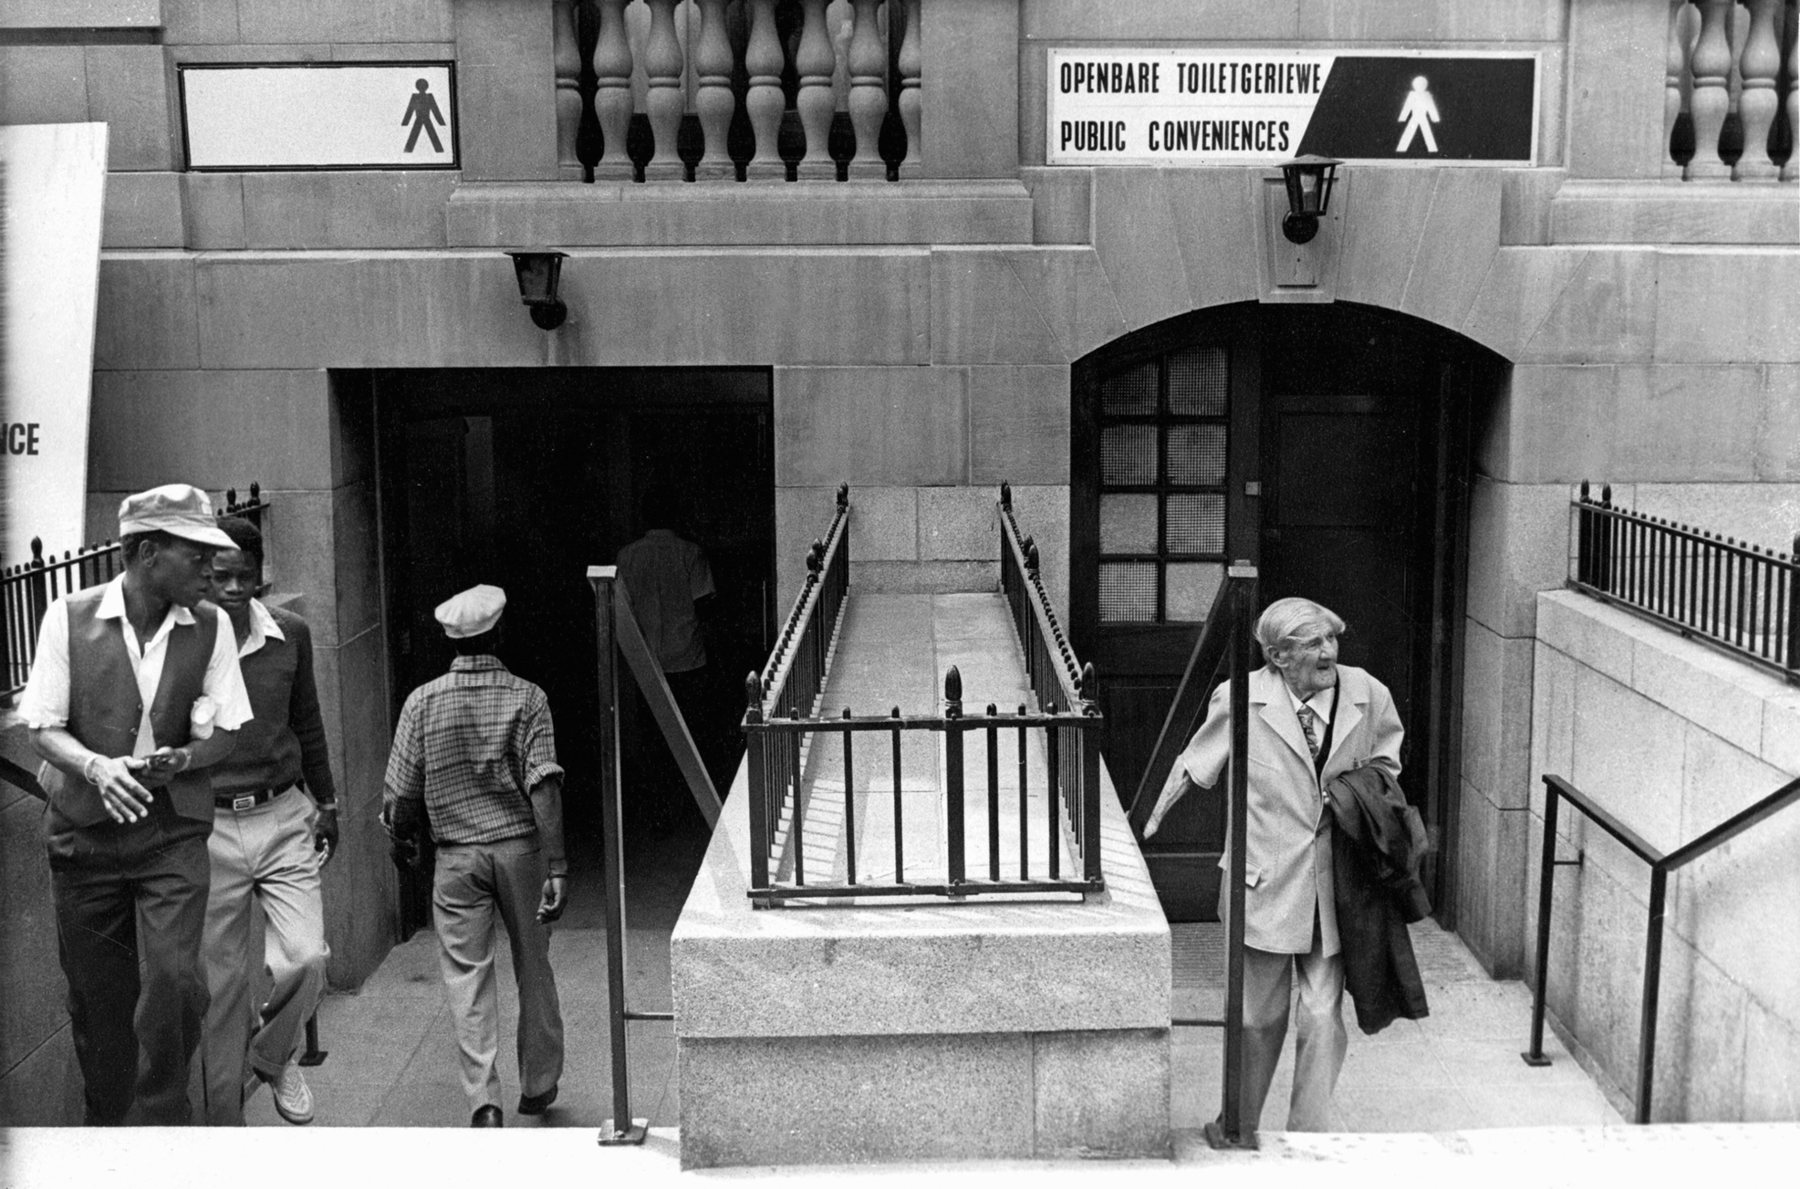 Fotografia em preto e branco. Duas escadas paralelas. Há homens negros passando por uma à esquerda e um senhor branco na escada à direita.